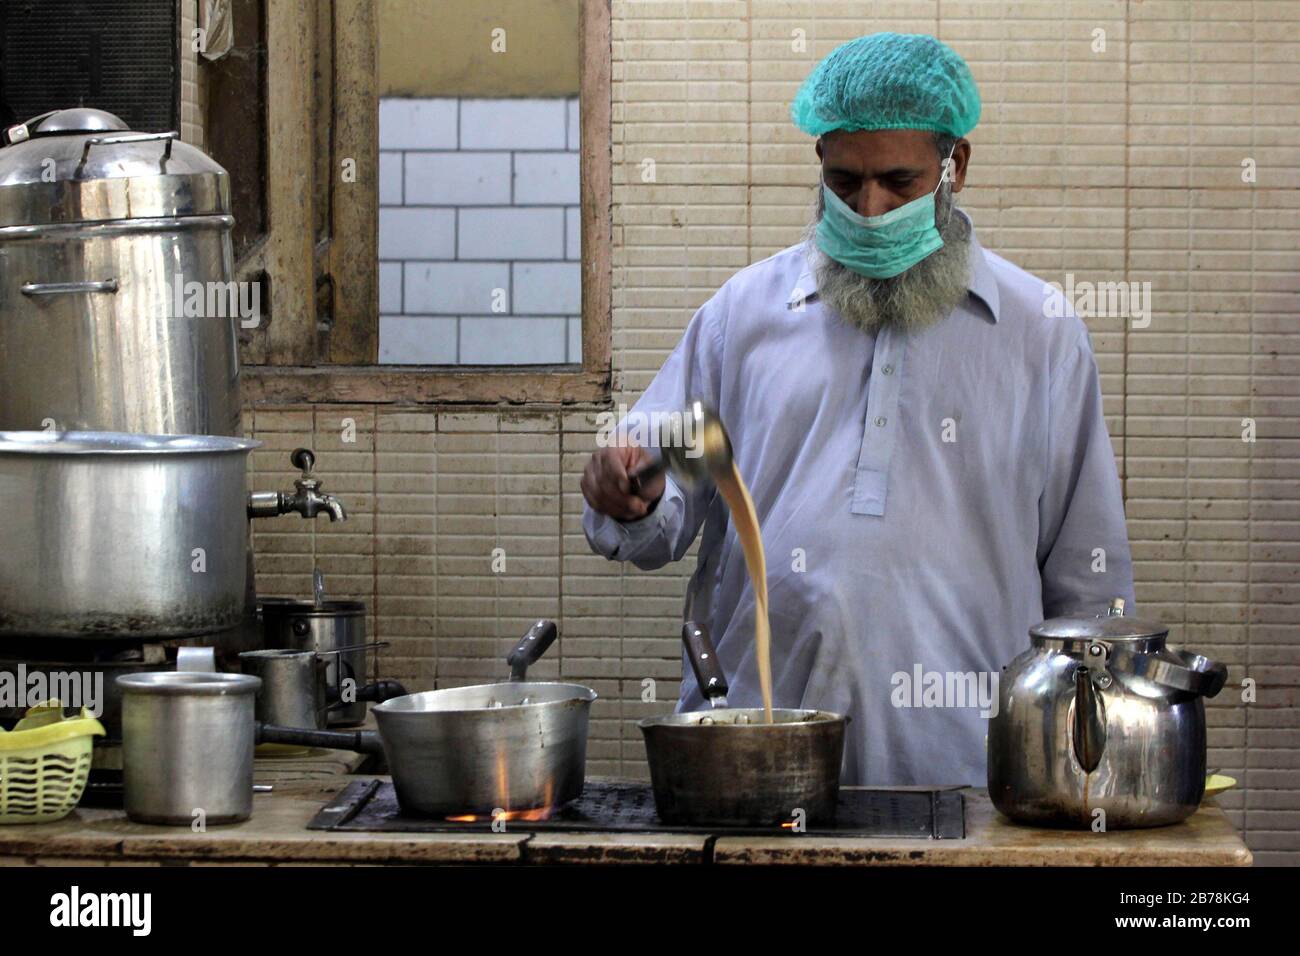 (200314) -- KARACHI, le 14 mars 2020 (Xinhua) -- un homme portant un masque de visage prépare du thé dans un restaurant dans la ville portuaire pakistanaise méridionale de Karachi, le 14 mars 2020. Le gouvernement du Pakistan a annoncé de mettre à niveau ses mesures contre COVID-19 dans tout le pays après que 28 personnes ont testé le virus positif au cours des 17 derniers jours, a déclaré l'adjoint spécial au Premier ministre de la Santé Zafar Mirza aux médias ici vendredi soir. Le pays a interdit toutes sortes de rassemblements publics, y compris des festivals sportifs et culturels, des rassemblements récréatifs dans les cinémas et les théâtres, des cérémonies de mariage à hal Banque D'Images